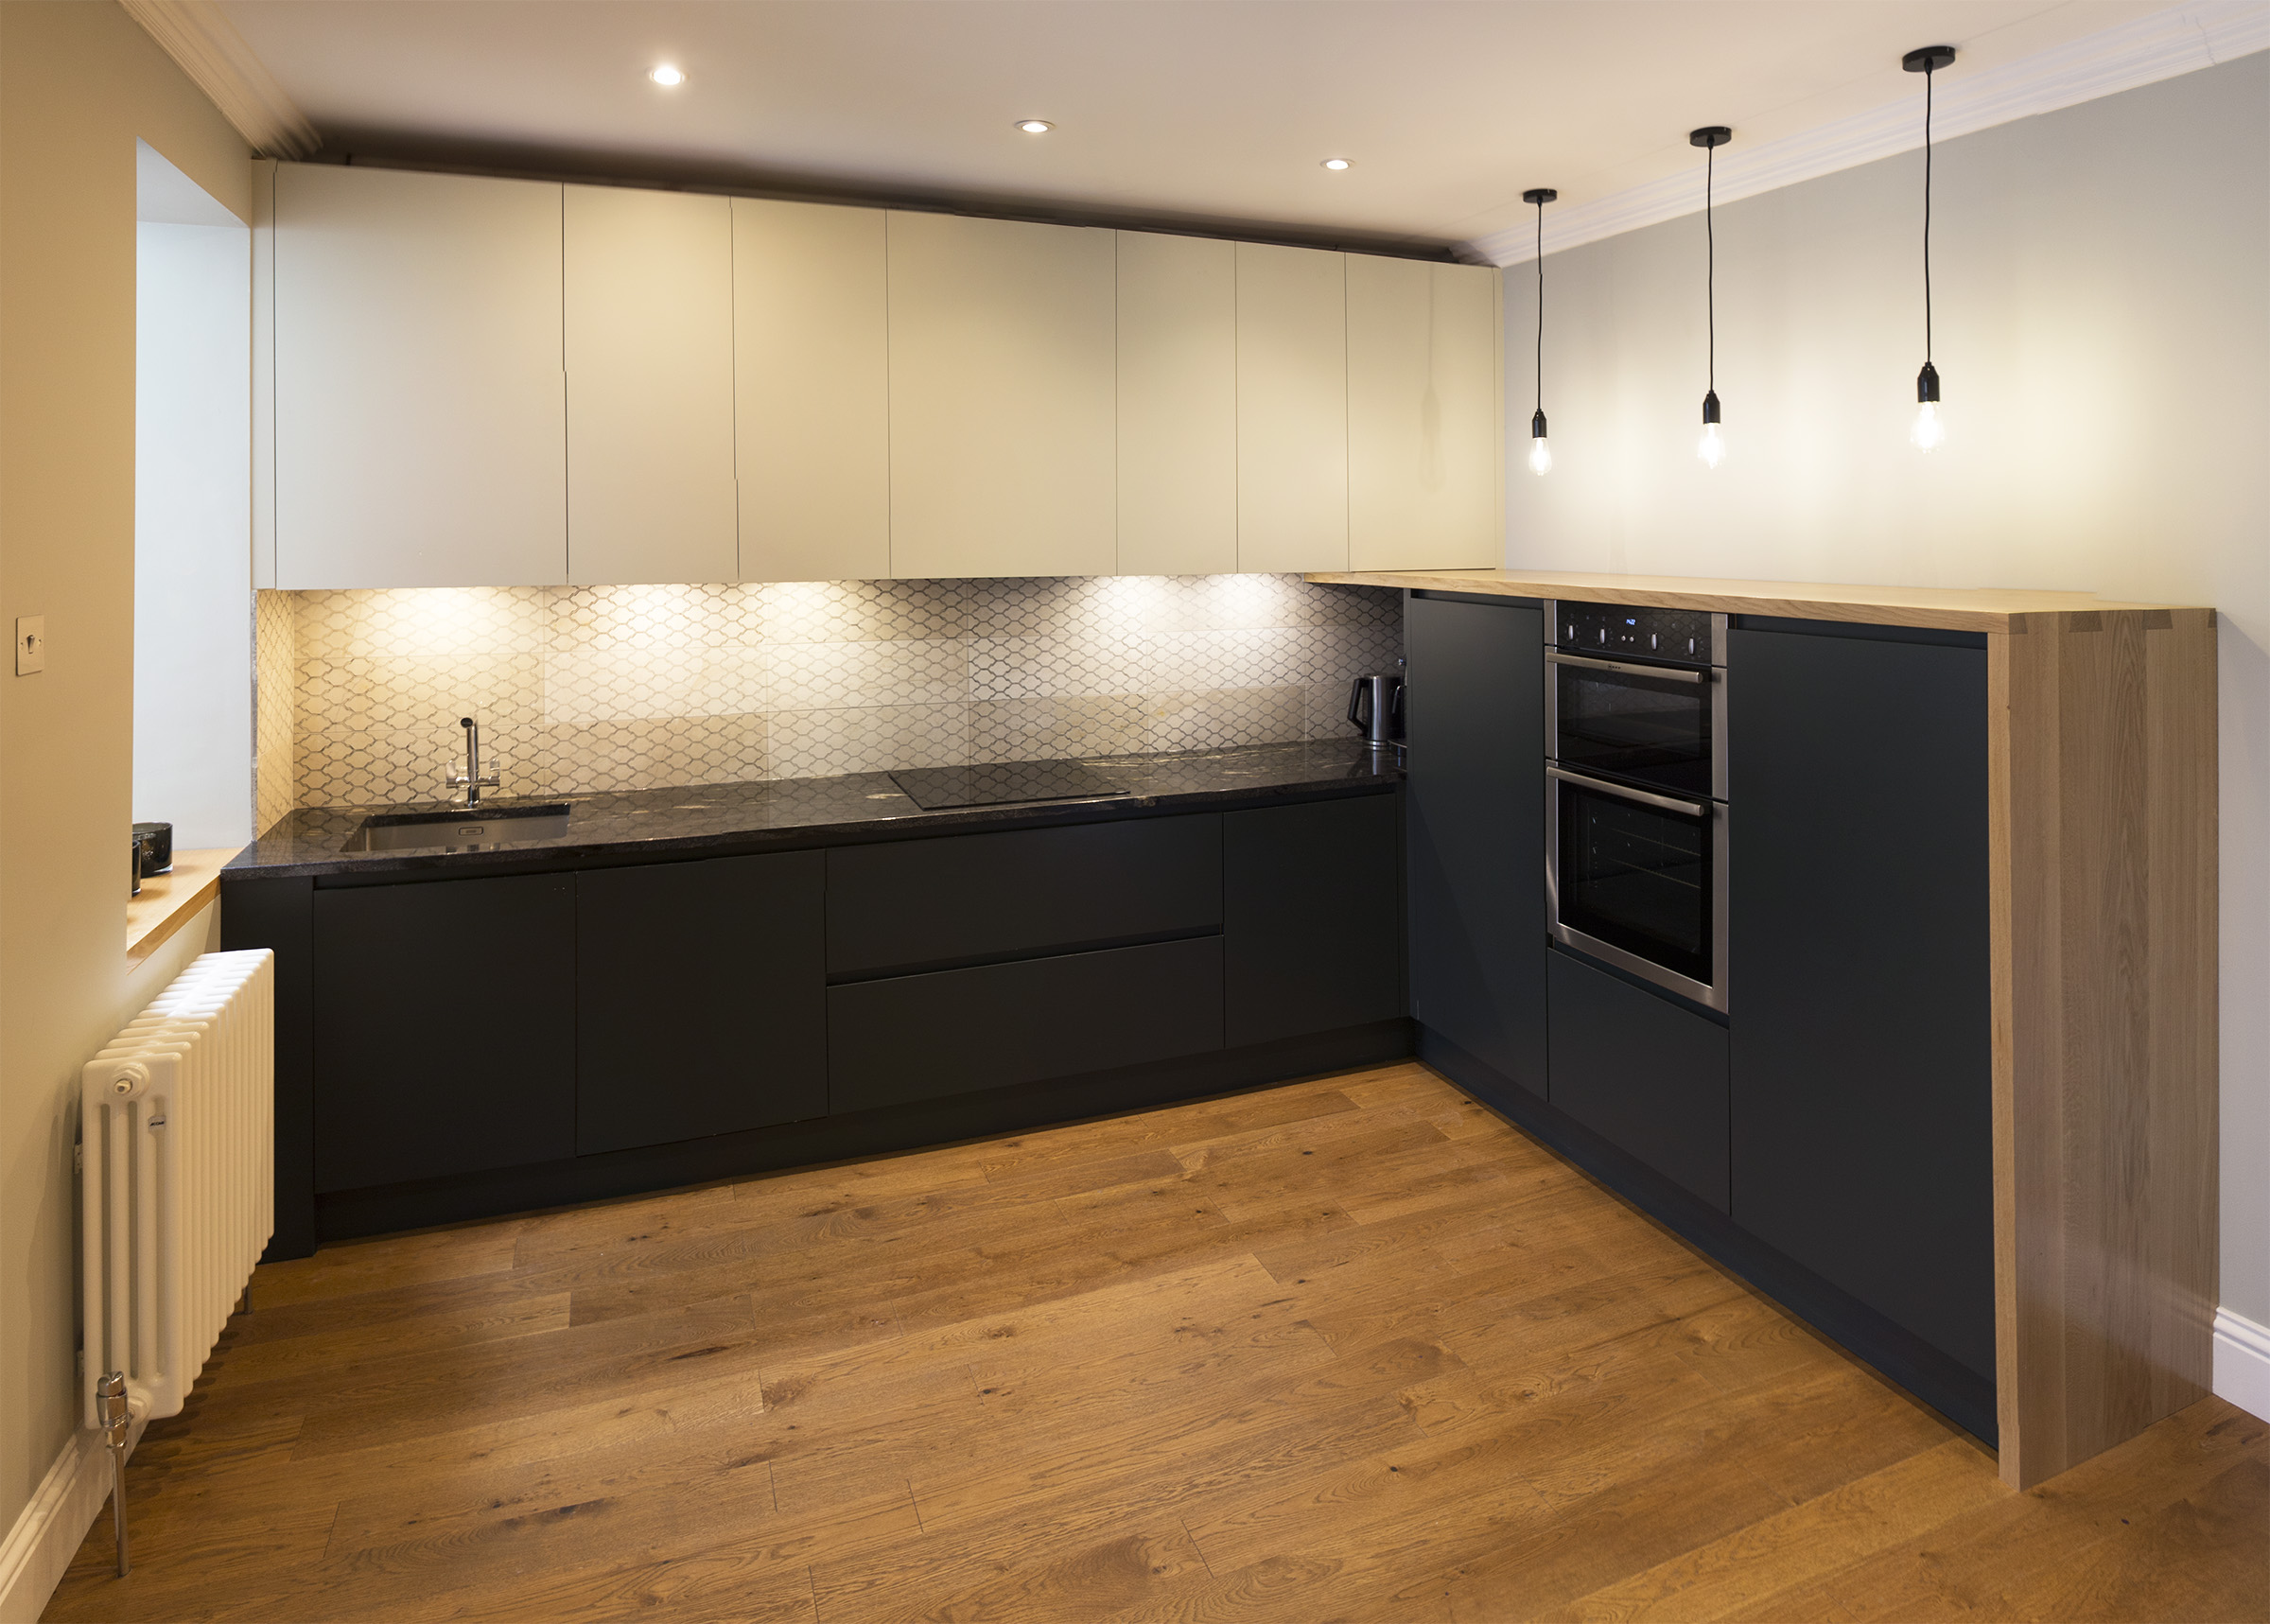 Design Tips for an L-Shaped Kitchen | Daniel Scott Kitchens